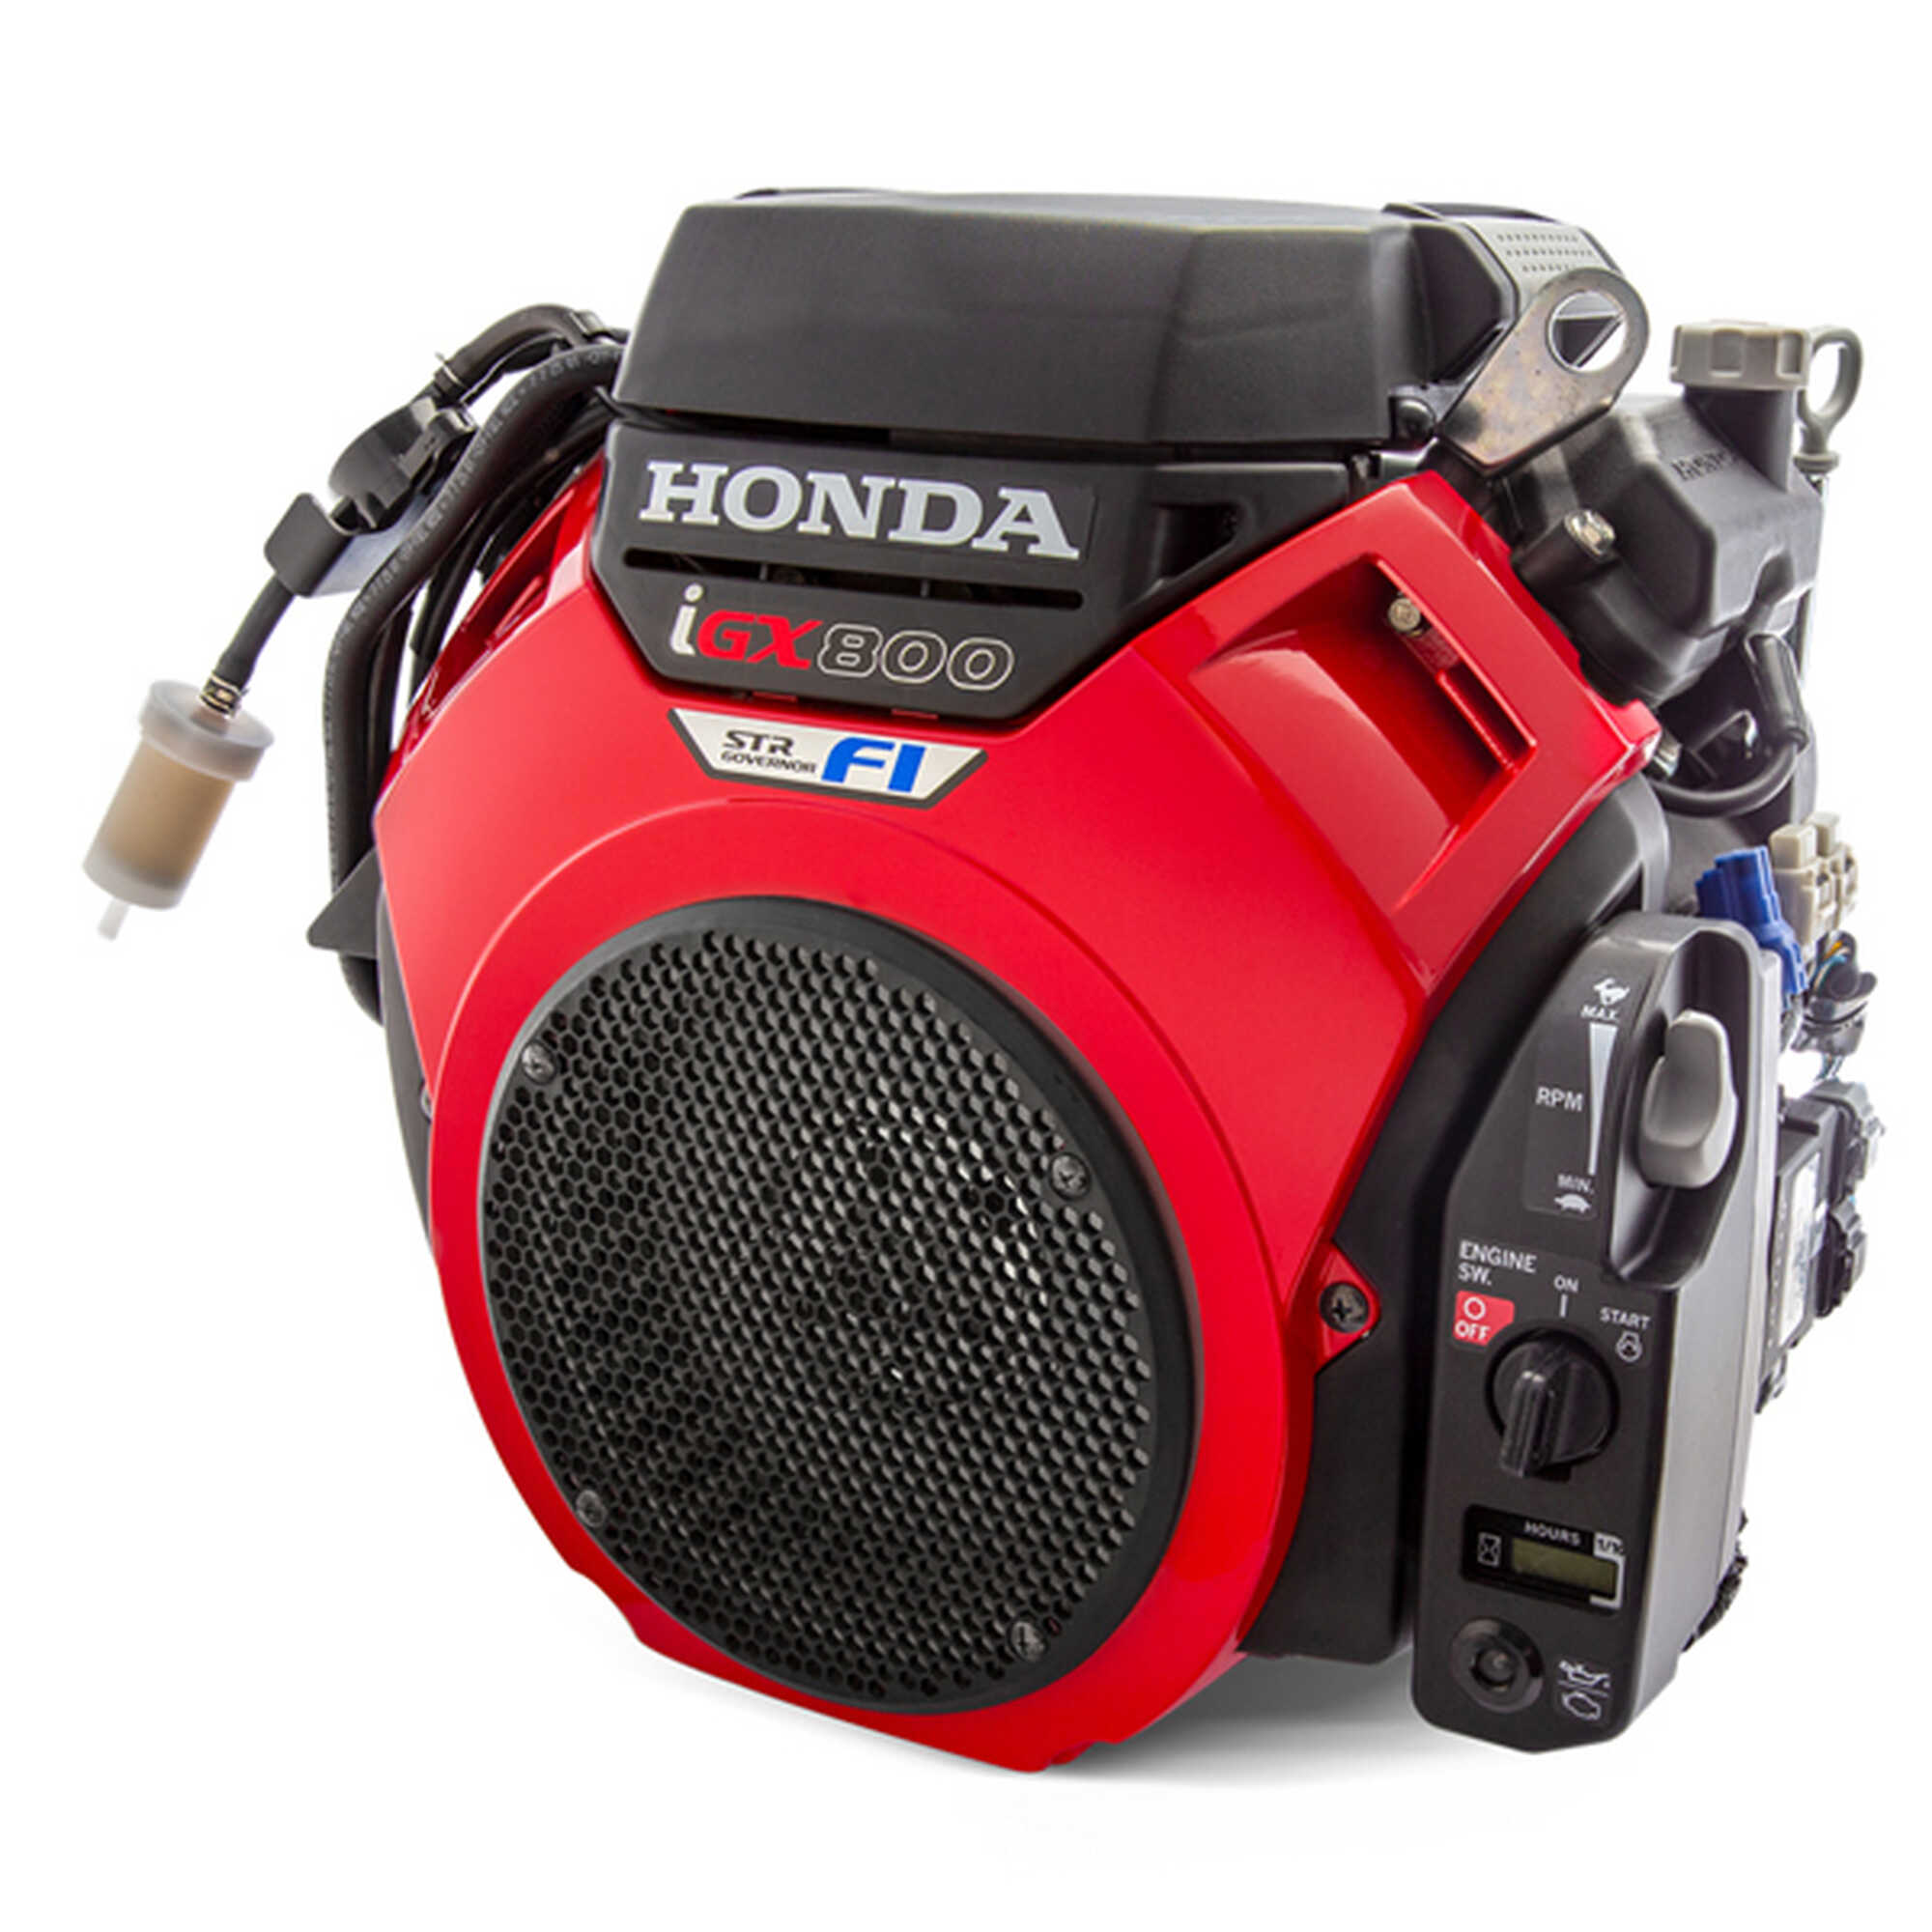 La gamma dei Motori Honda V-Twin si amplia con due nuovi modelli a iniezione elettronica (EFI) ...Quando l’Affidabilità incontra l’Intelligenza